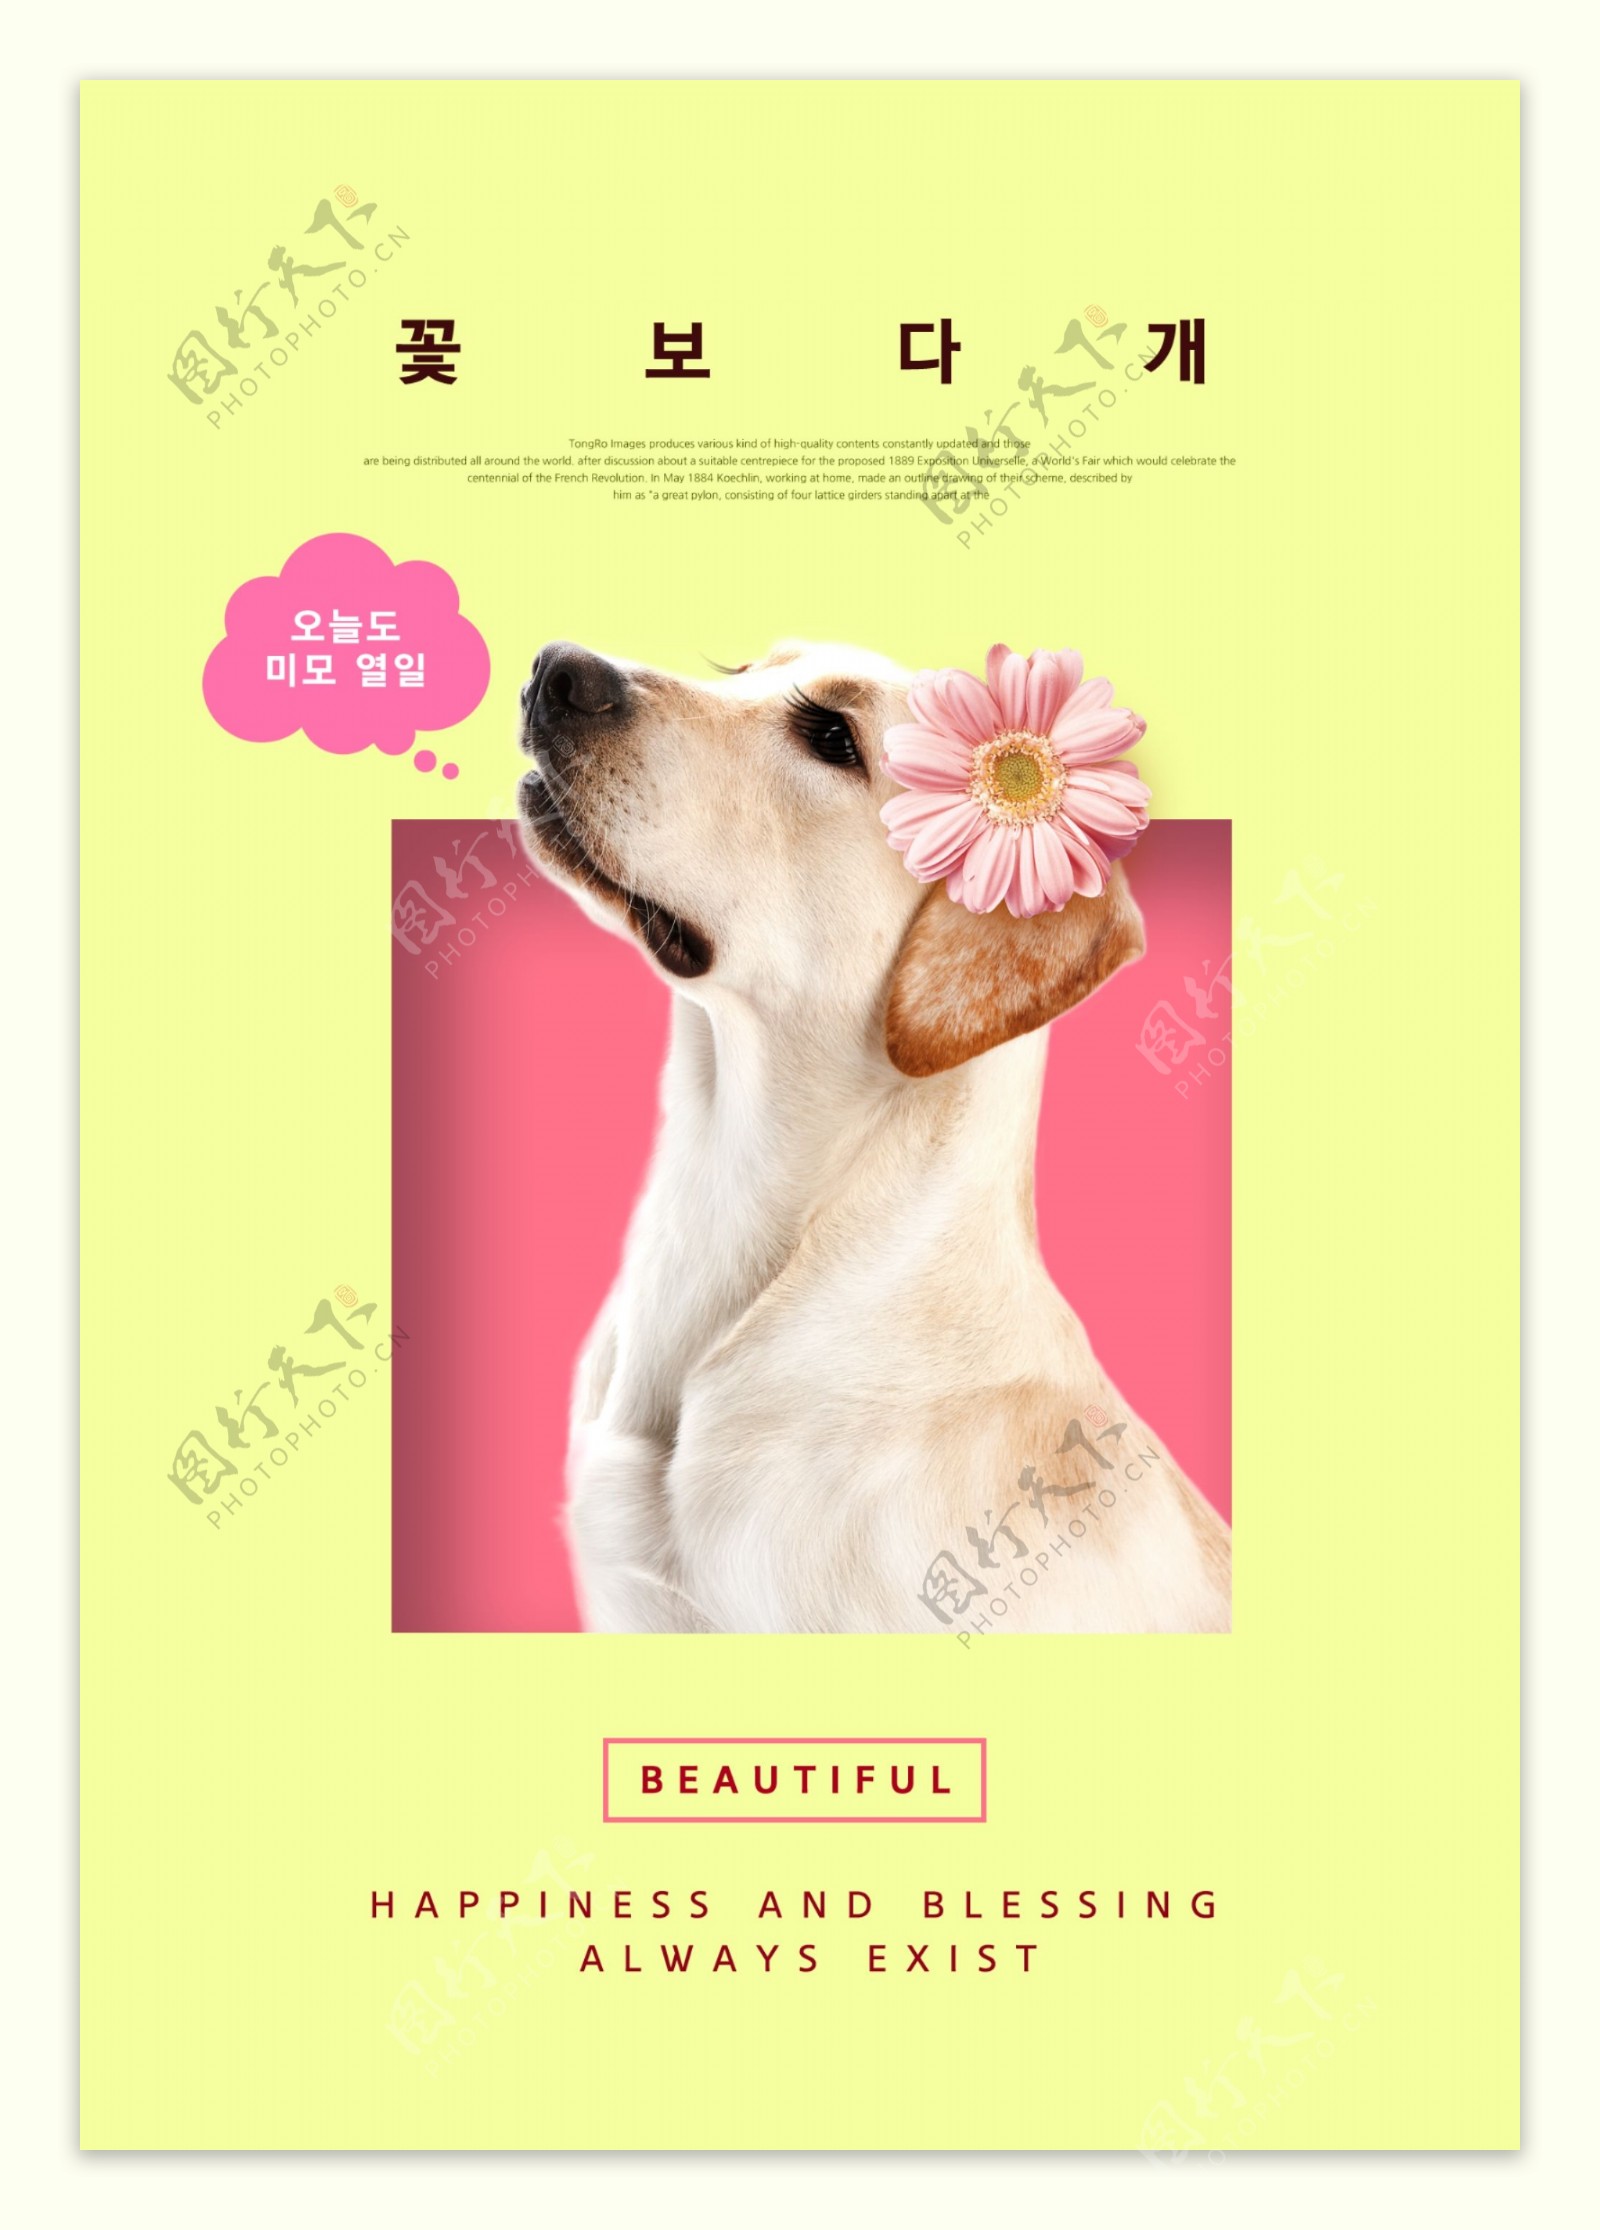 戴着红花的可爱宠物狗海报素材